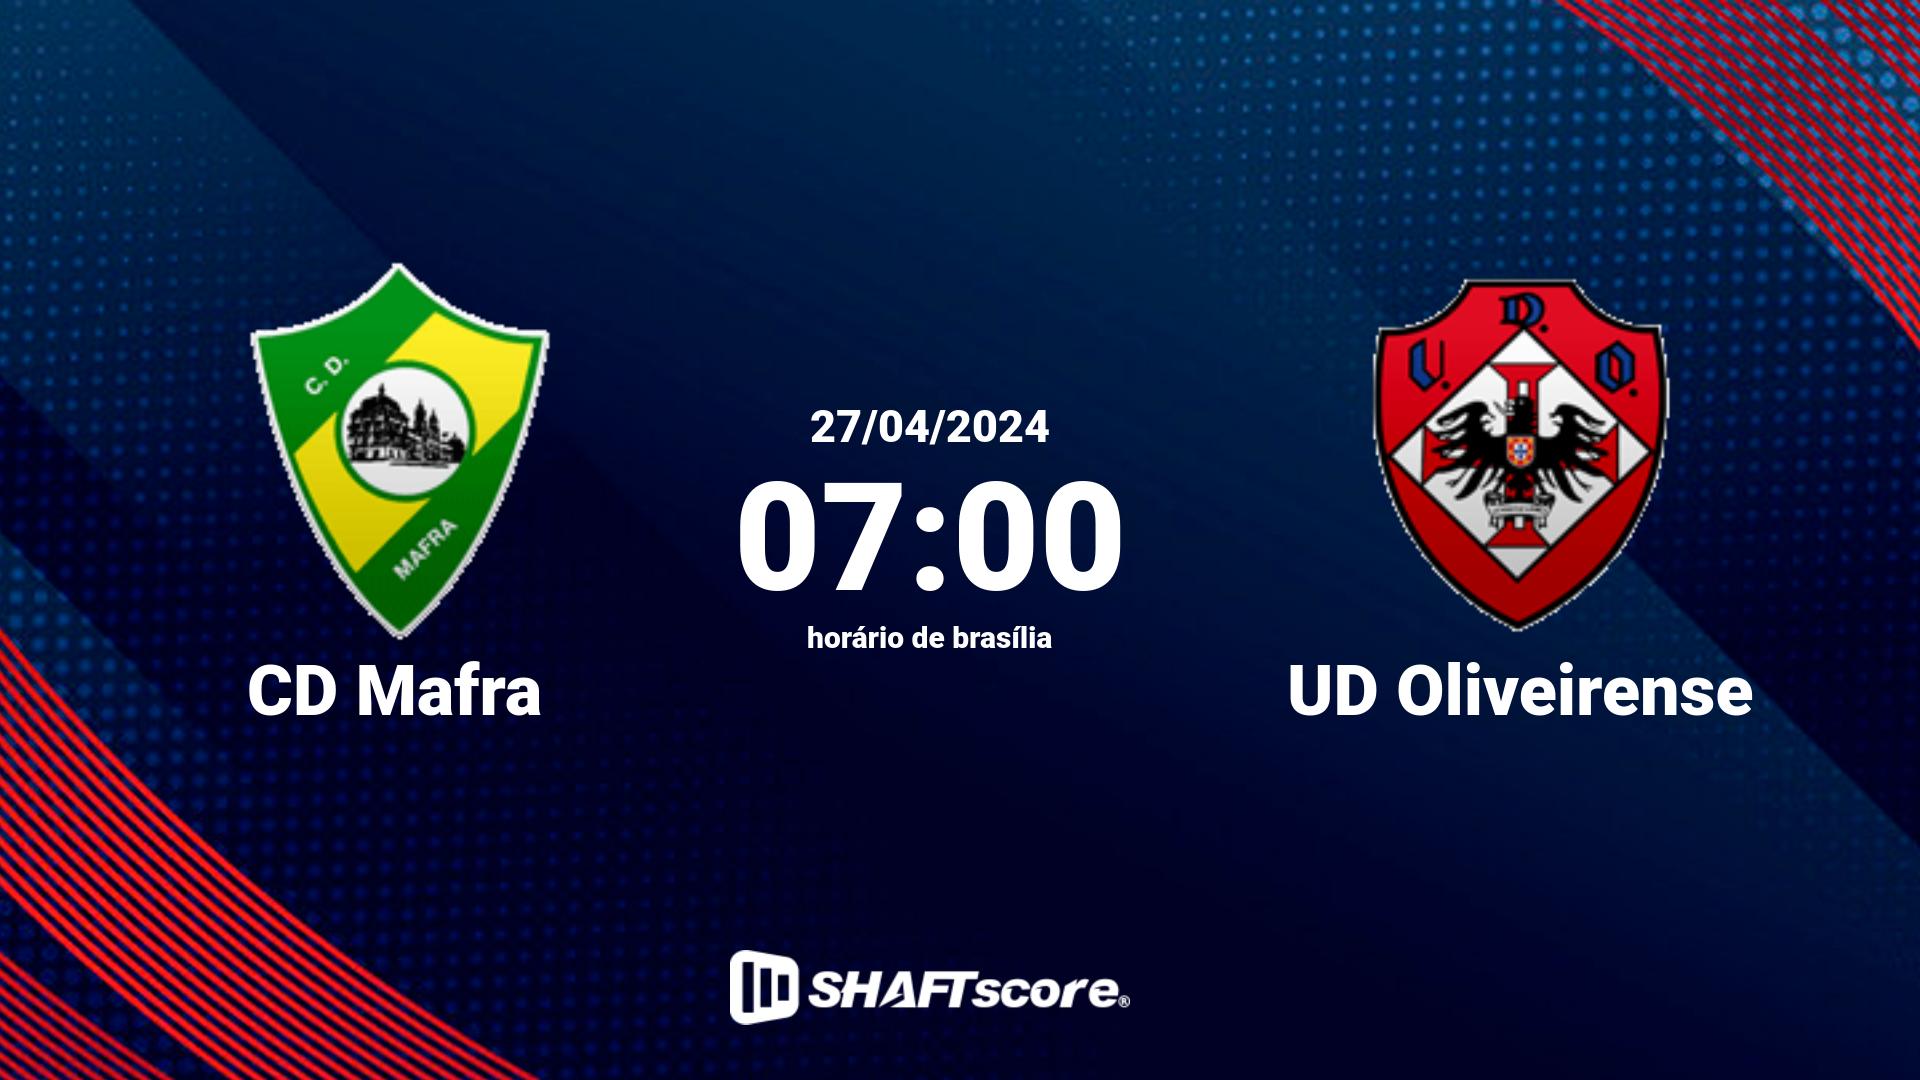 Estatísticas do jogo CD Mafra vs UD Oliveirense 27.04 07:00